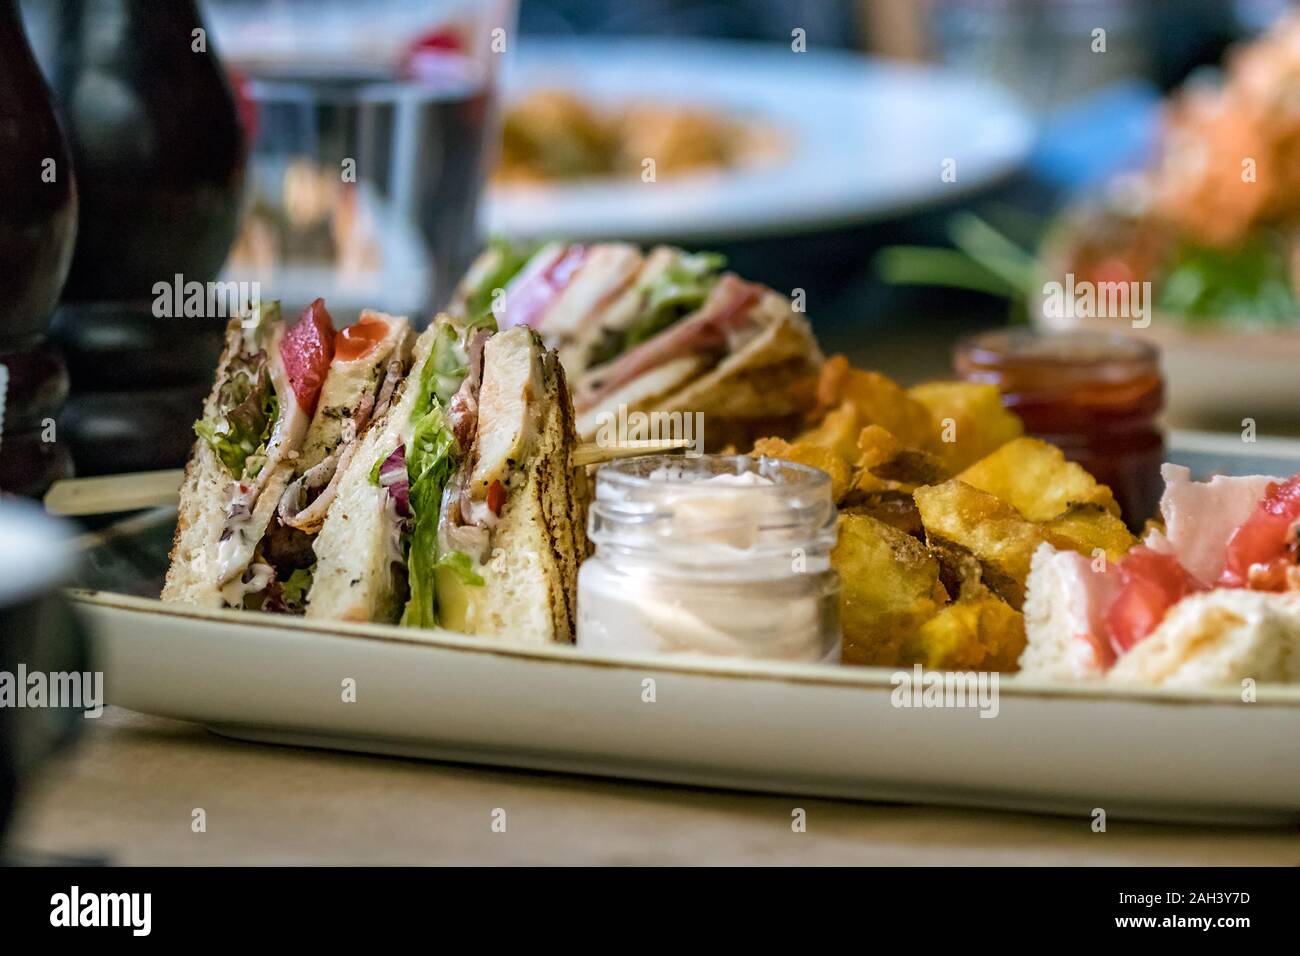 Un club sandwich posto su una piastra con la maionese e patate fritte. Foto Stock